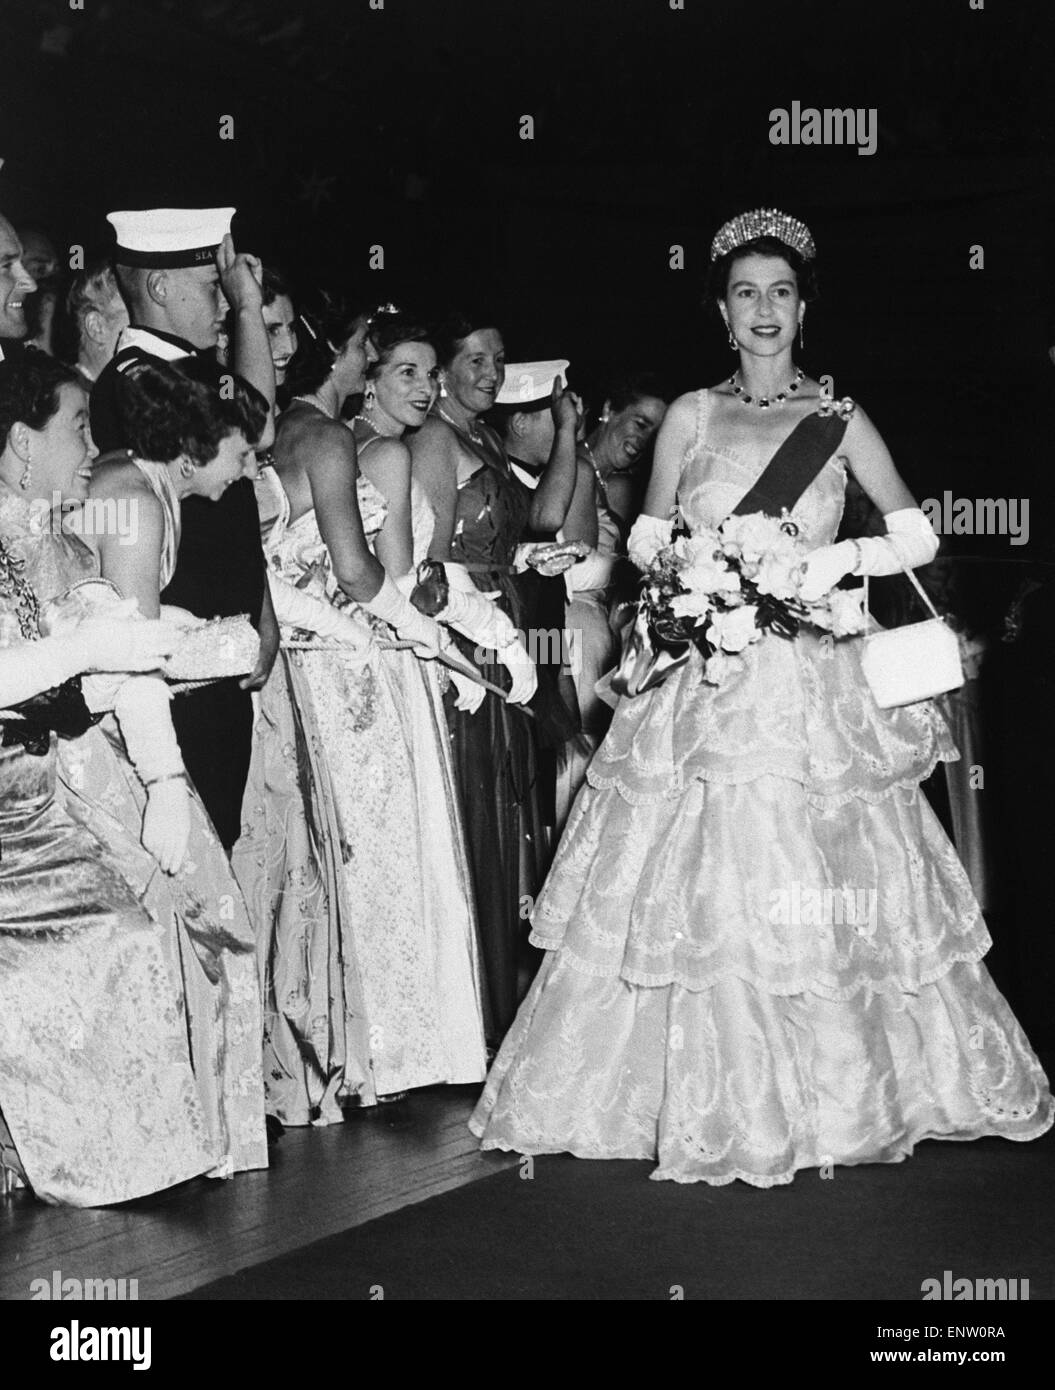 La regina Elisabetta II visita Tasmania 1954. La regina in tutta la sua gloria ha fatto il suo ingresso regale per la Citta' di Hobart Hall, Tasmania, per la sfera civica. Marzo 1954. Foto Stock